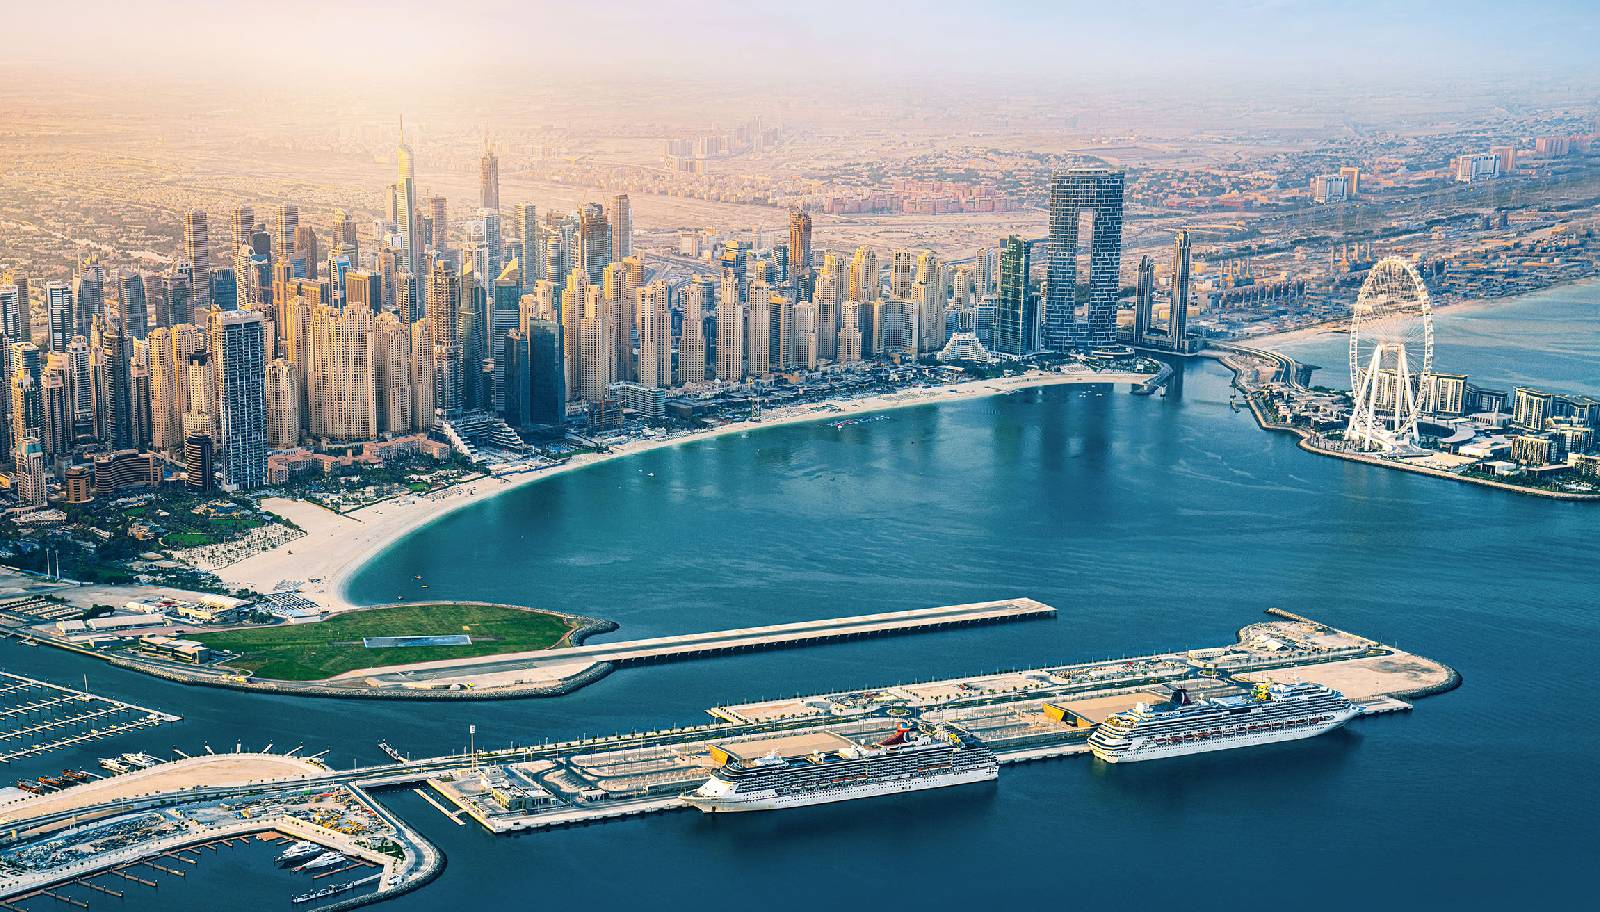 Dubai Boat Show Features Electric Sailboat, $318 Million Superyacht